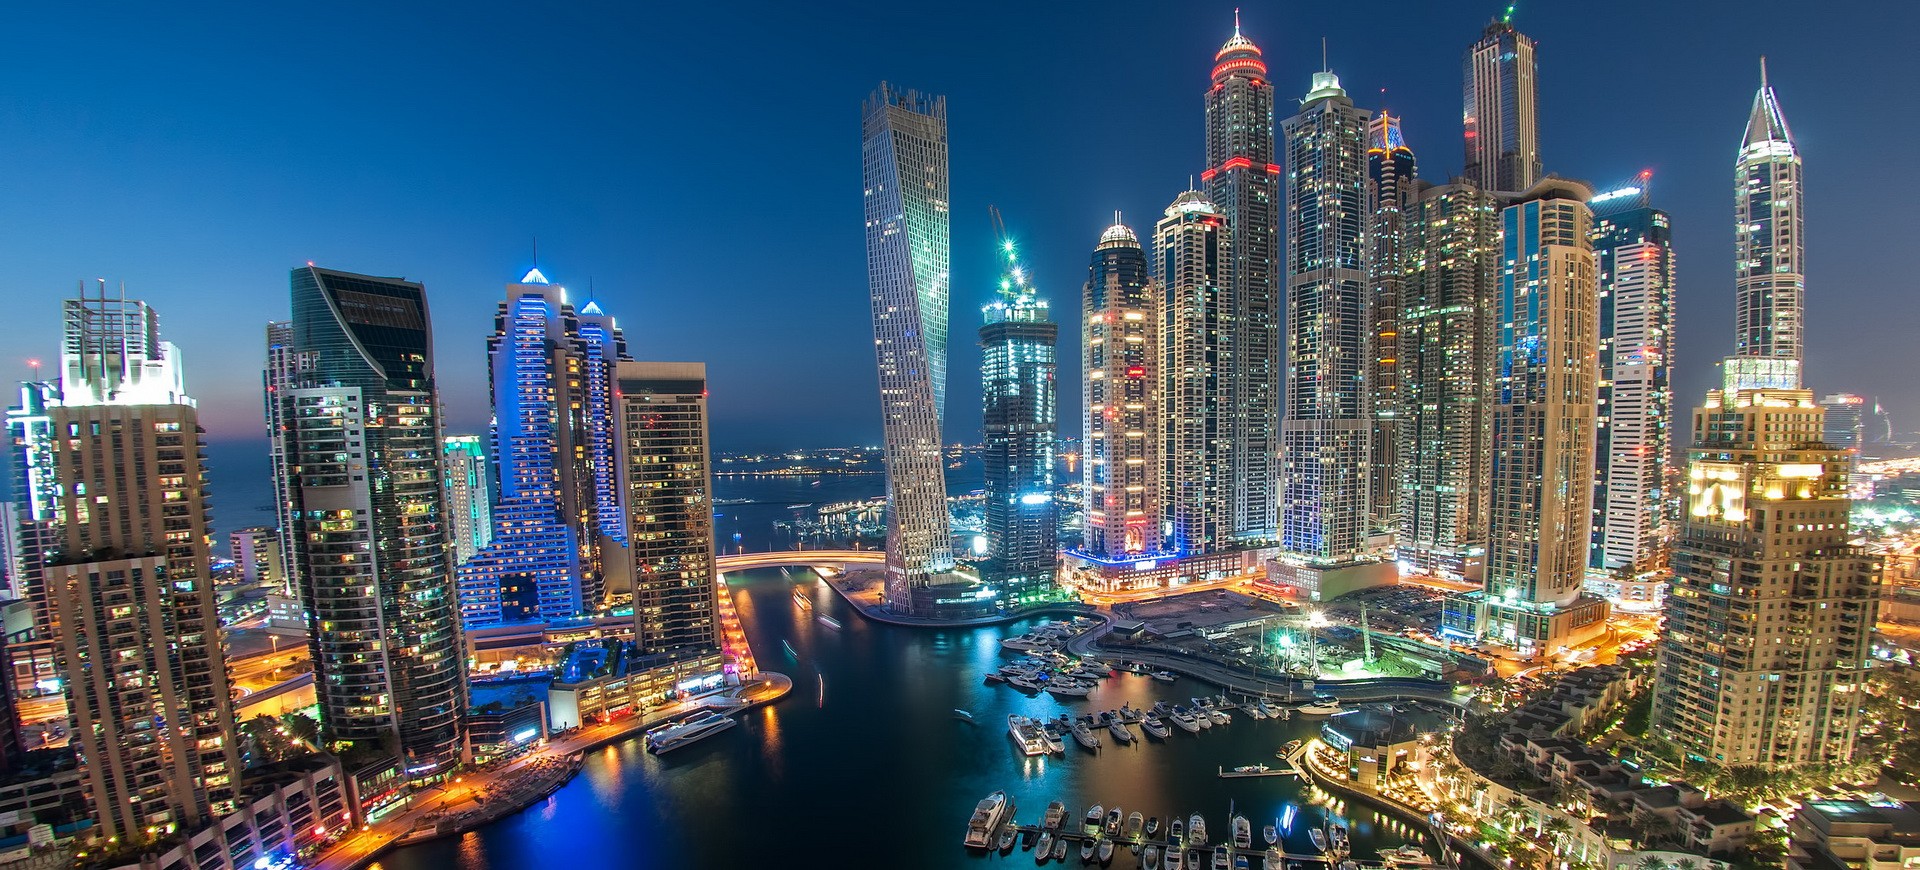 Skyline et Marina à Dubai by night aux Emirats Arabes Unis